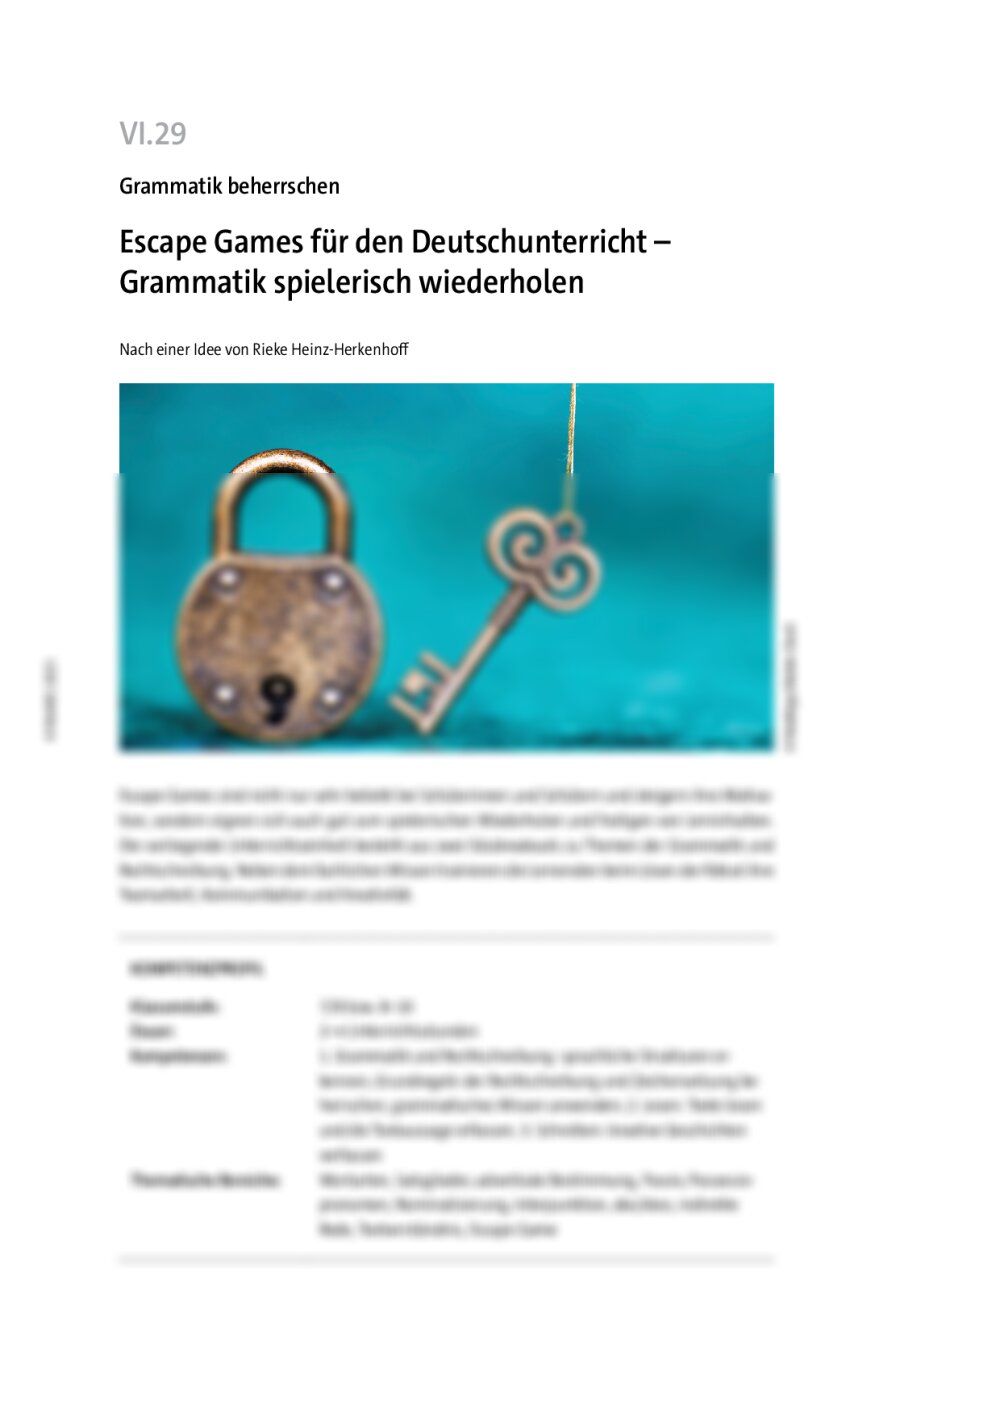 Escape Games für den Deutschunterricht - Seite 1